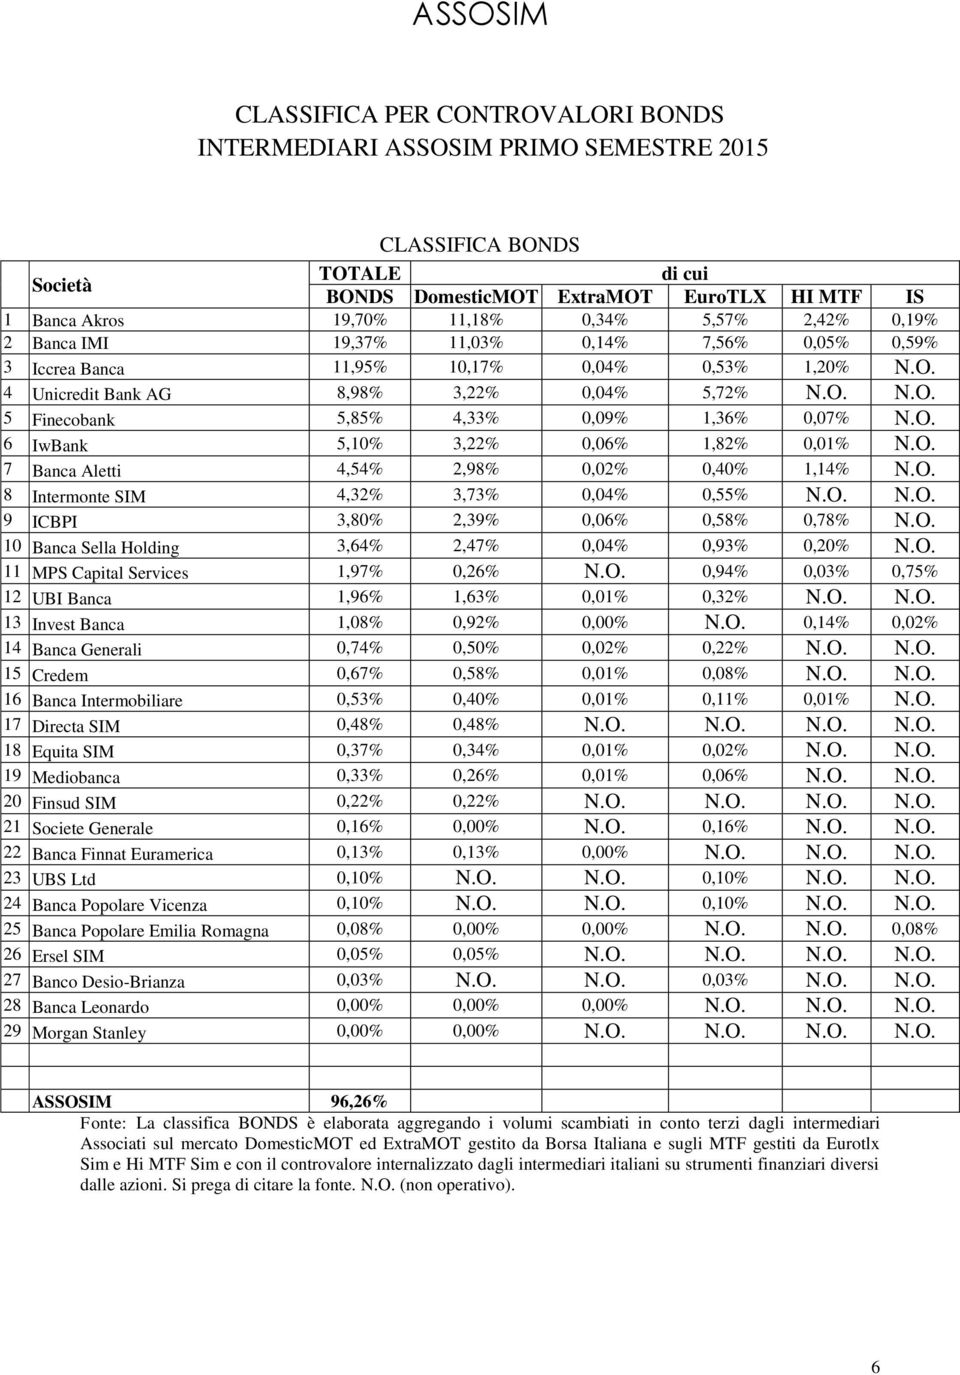 O. 6 IwBank 5,10% 3,22% 0,06% 1,82% 0,01% N.O. 7 Banca Aletti 4,54% 2,98% 0,02% 0,40% 1,14% N.O. 8 Intermonte SIM 4,32% 3,73% 0,04% 0,55% N.O. N.O. 9 ICBPI 3,80% 2,39% 0,06% 0,58% 0,78% N.O. 10 Banca Sella Holding 3,64% 2,47% 0,04% 0,93% 0,20% N.